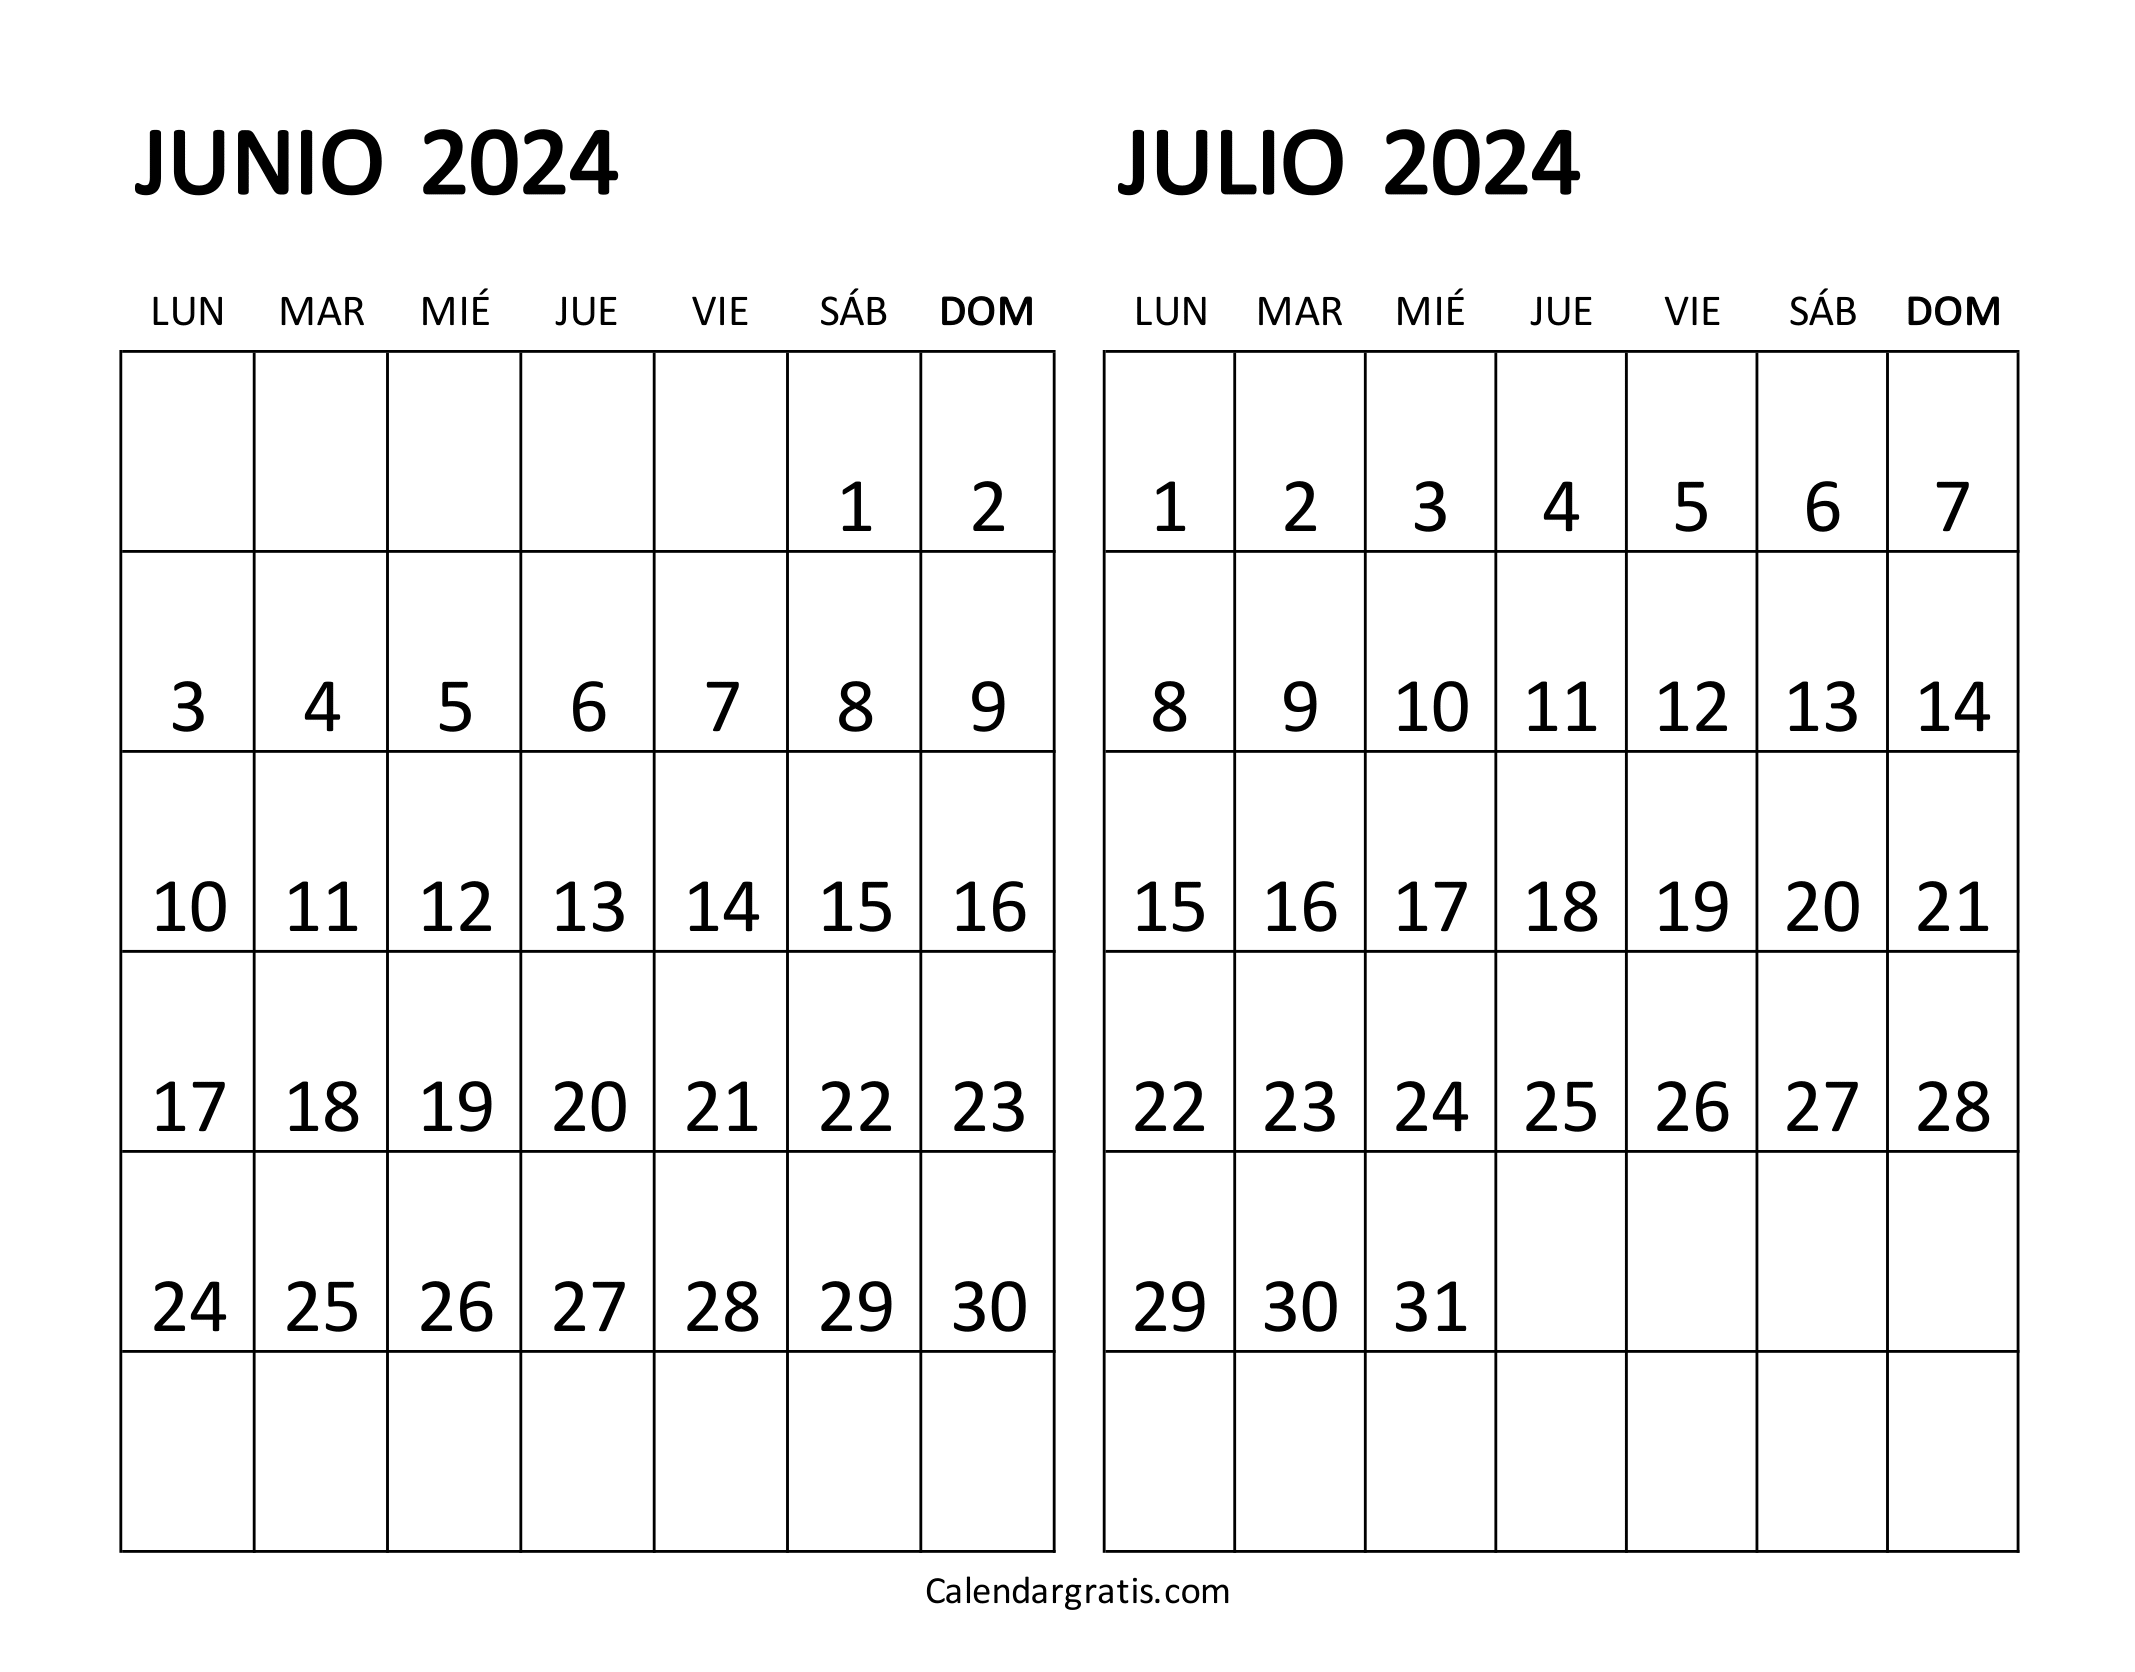 Calendario junio y julio 2024